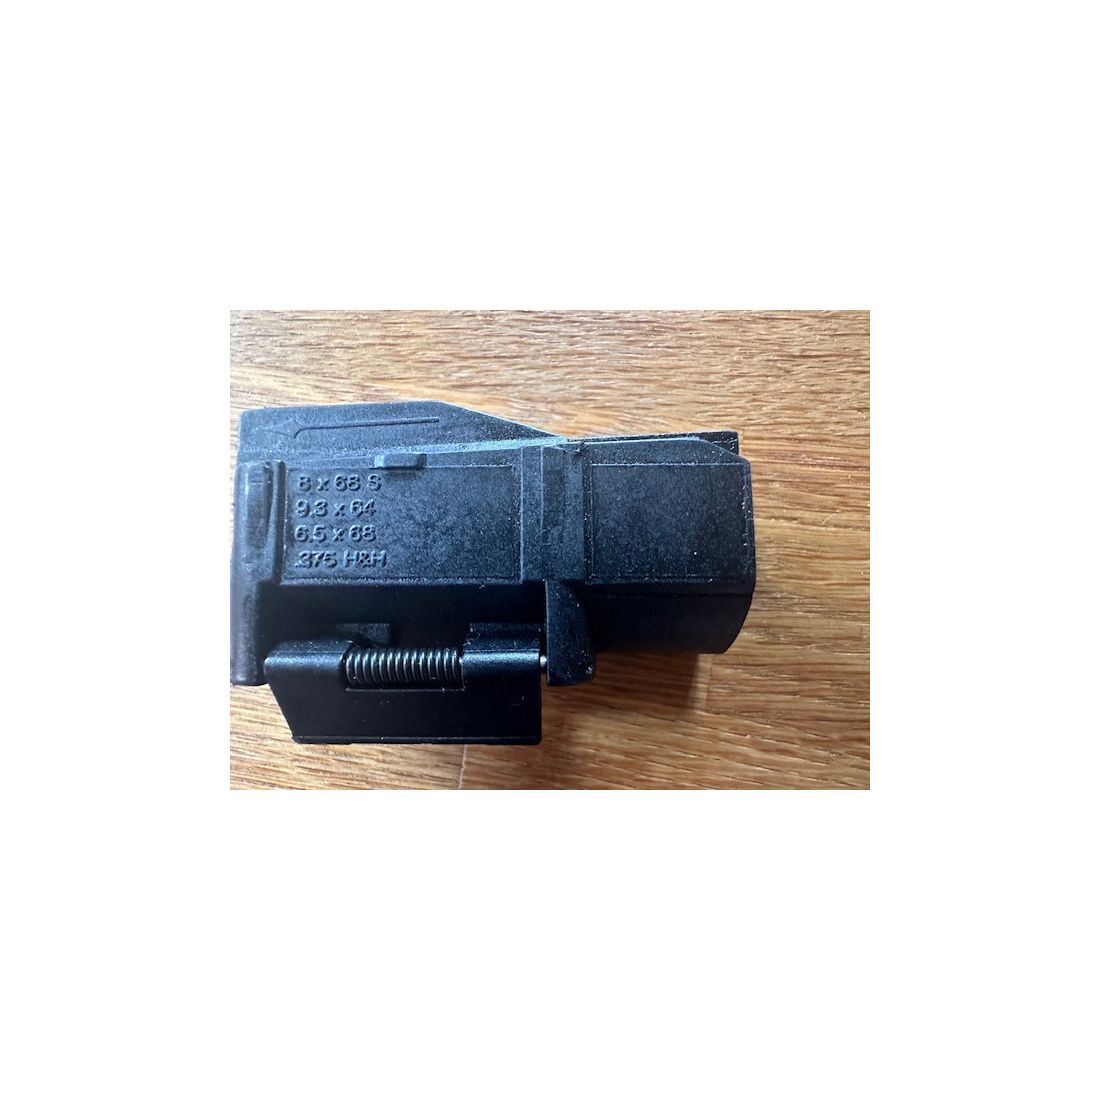 Blaser R93 gebrauchter Wechsellauf im Magnumkaliber 375 H&H mit Magazineinsatz